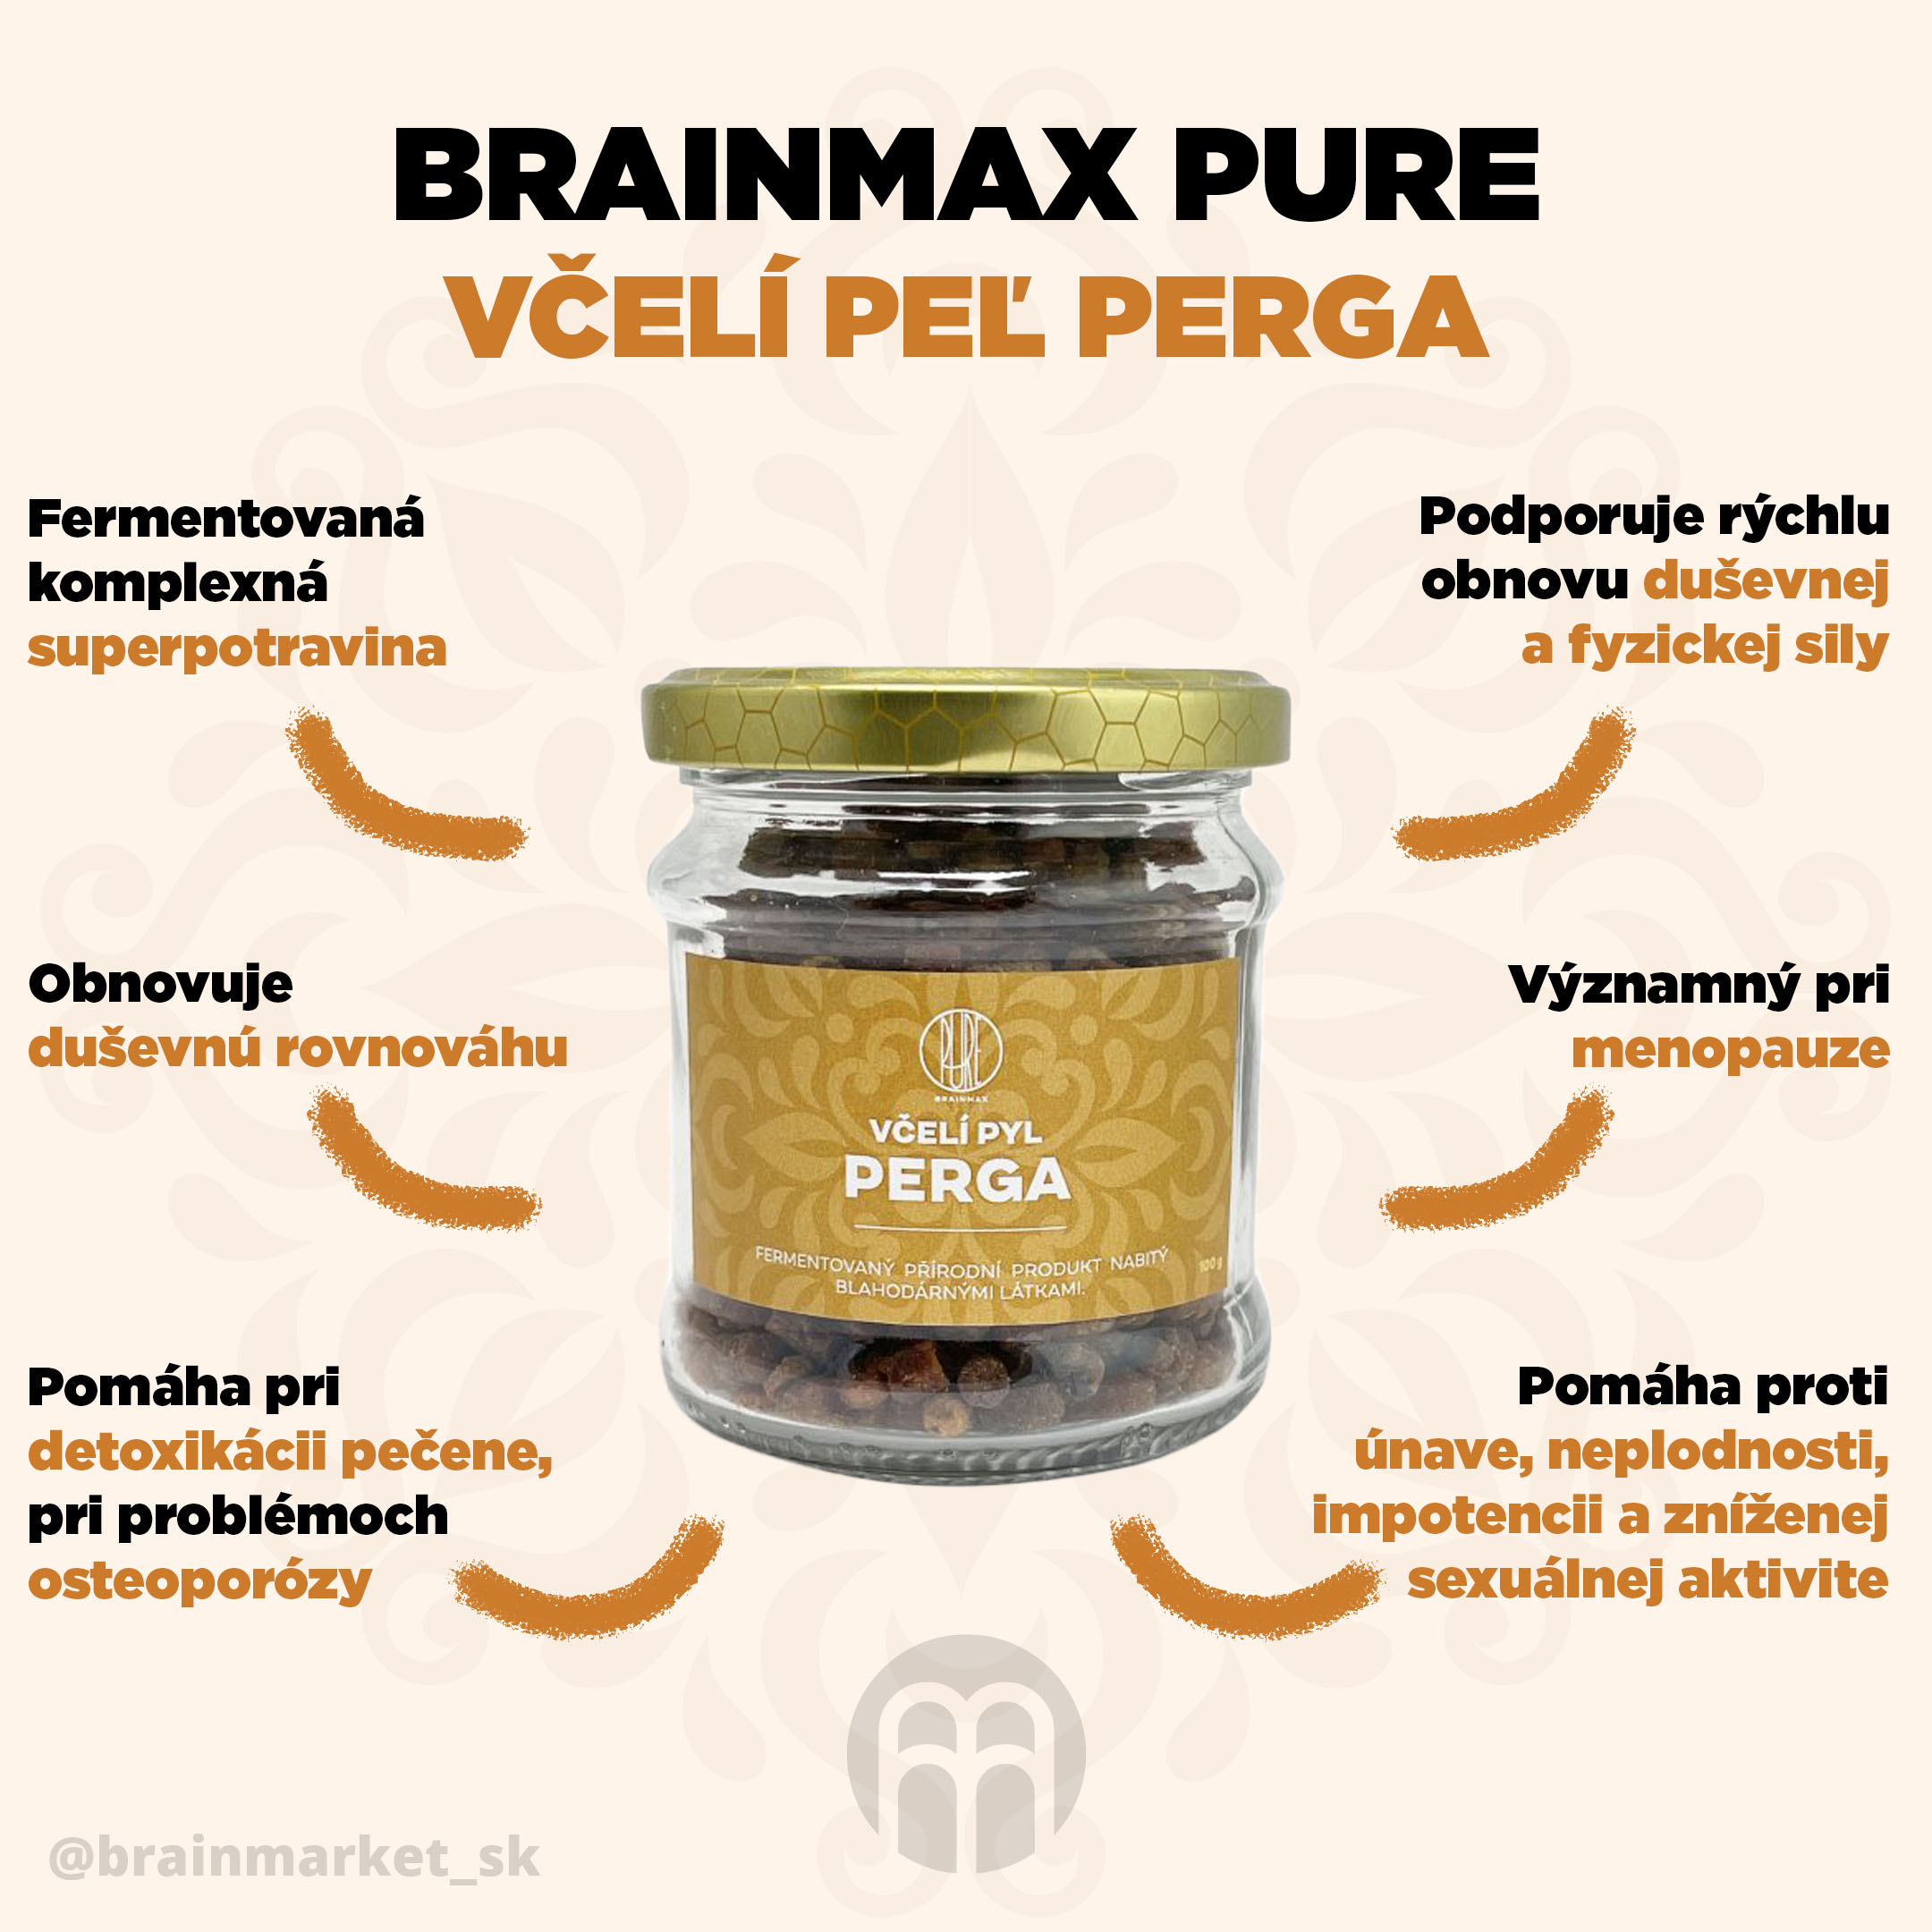 brainmax pure sklenice vceli pyl perga infografika brainmarket SK